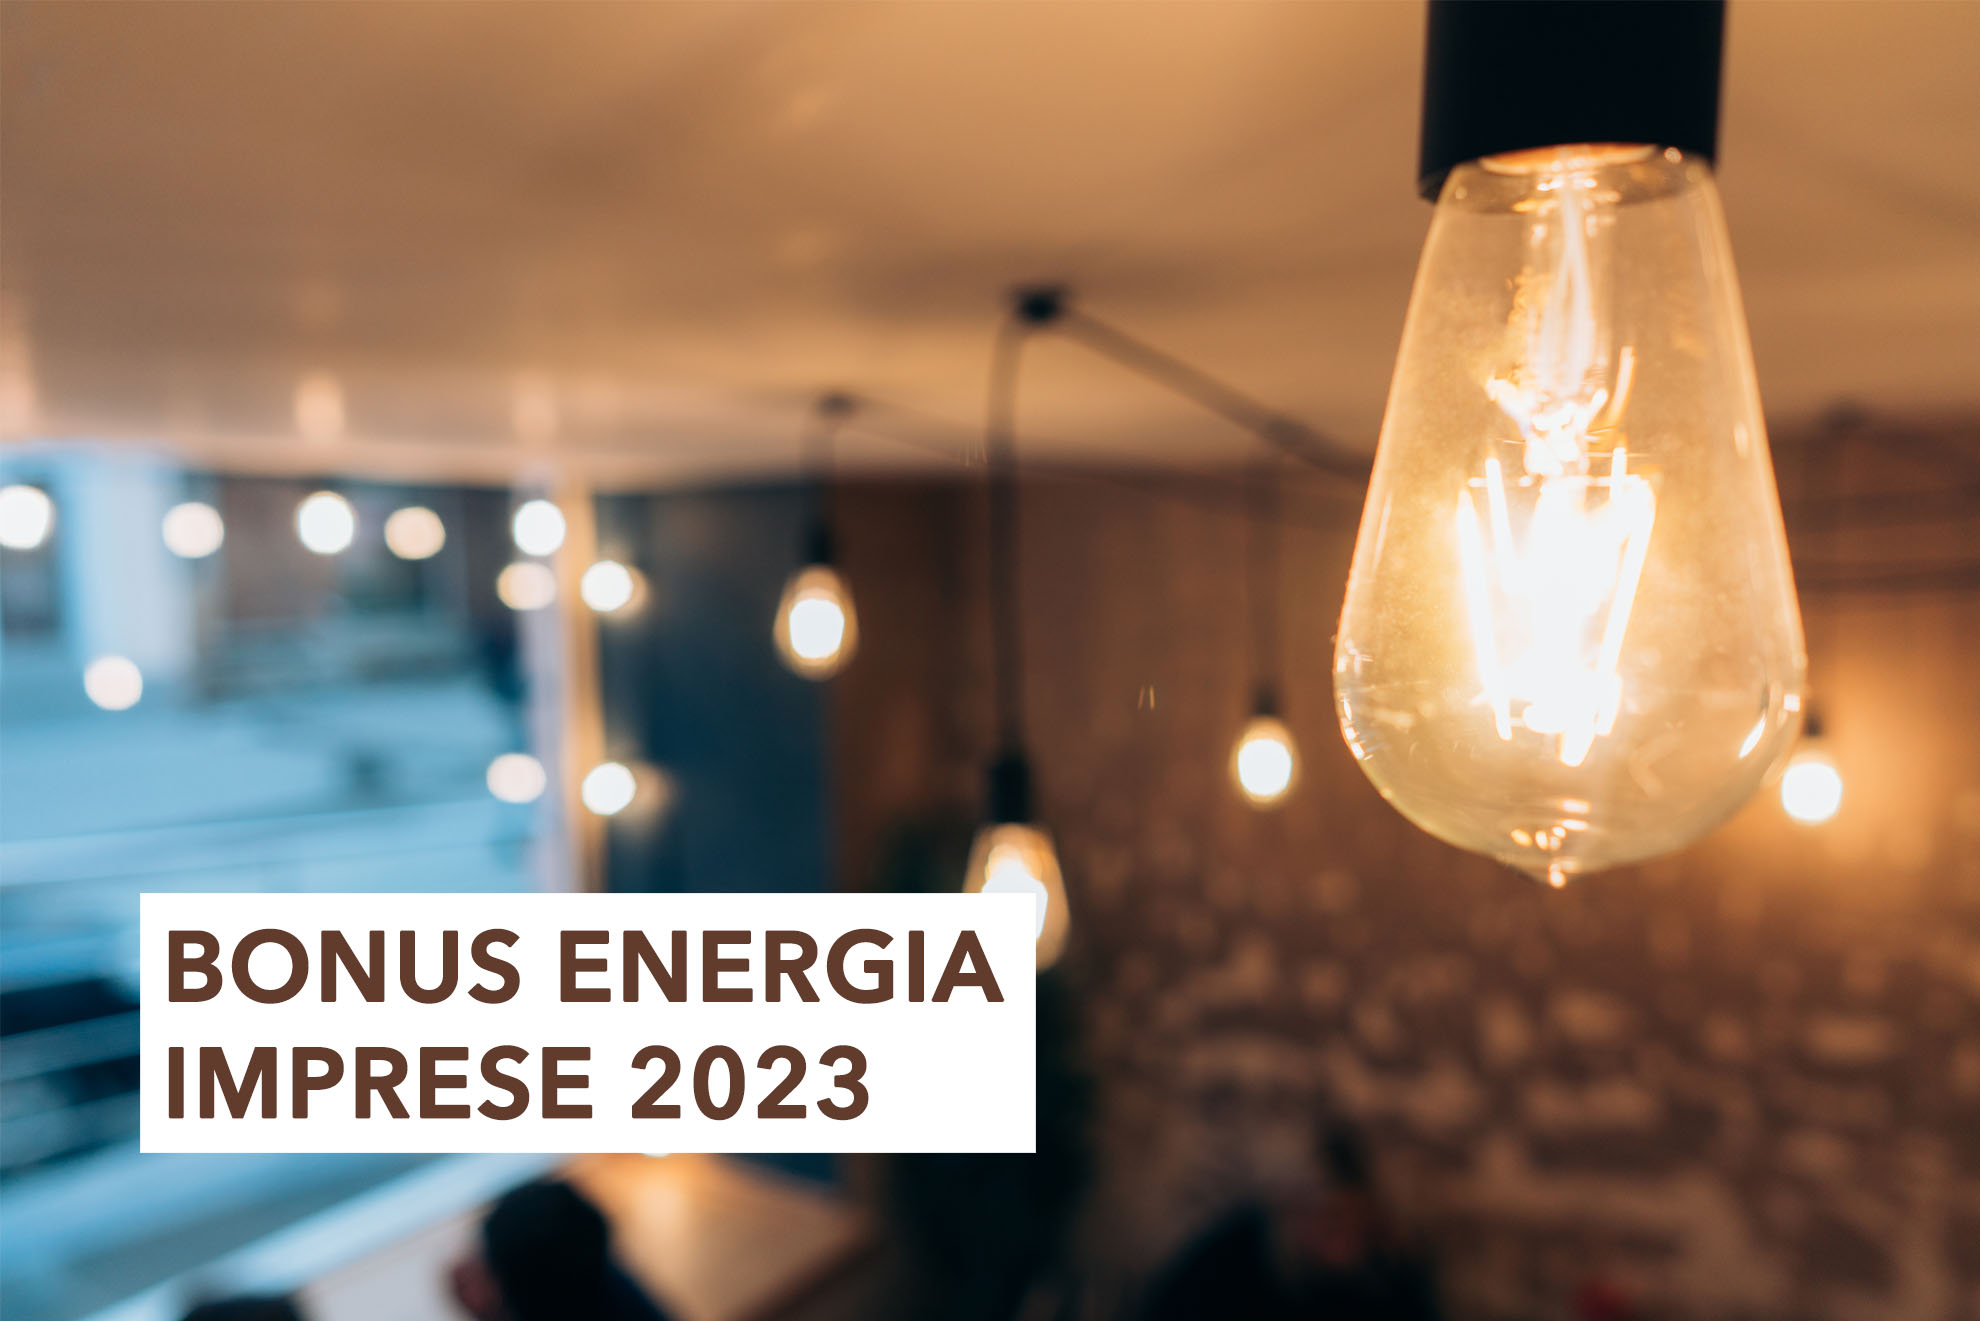 Bonus energia imprese 2023